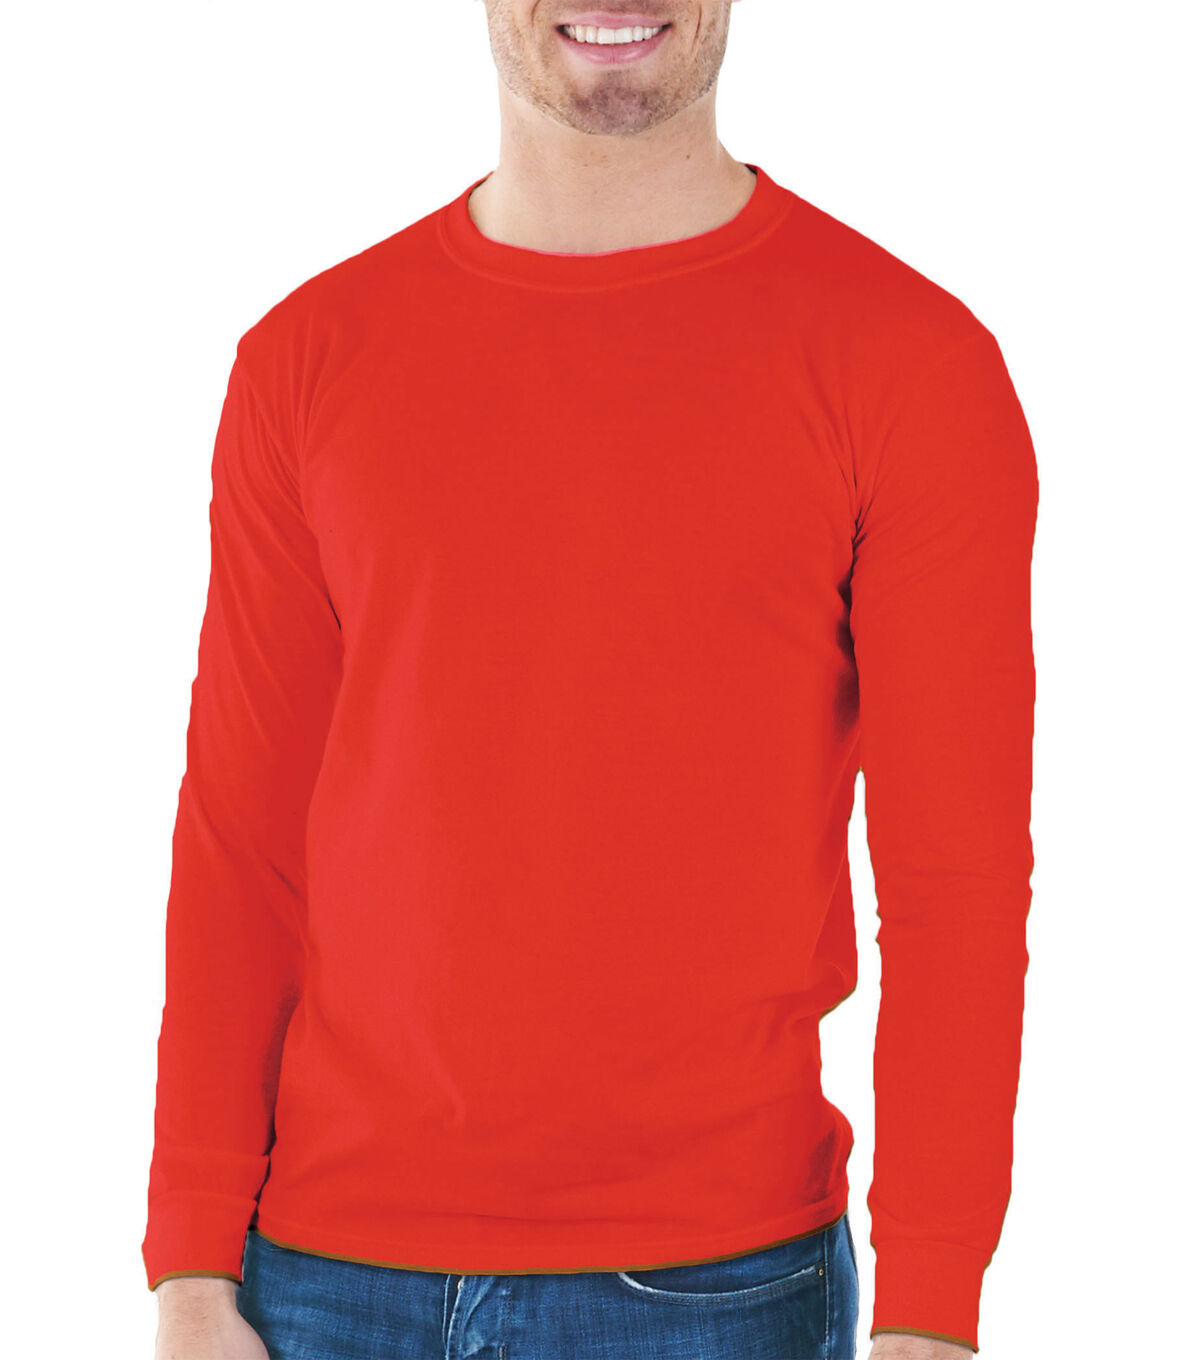 men red tshirt